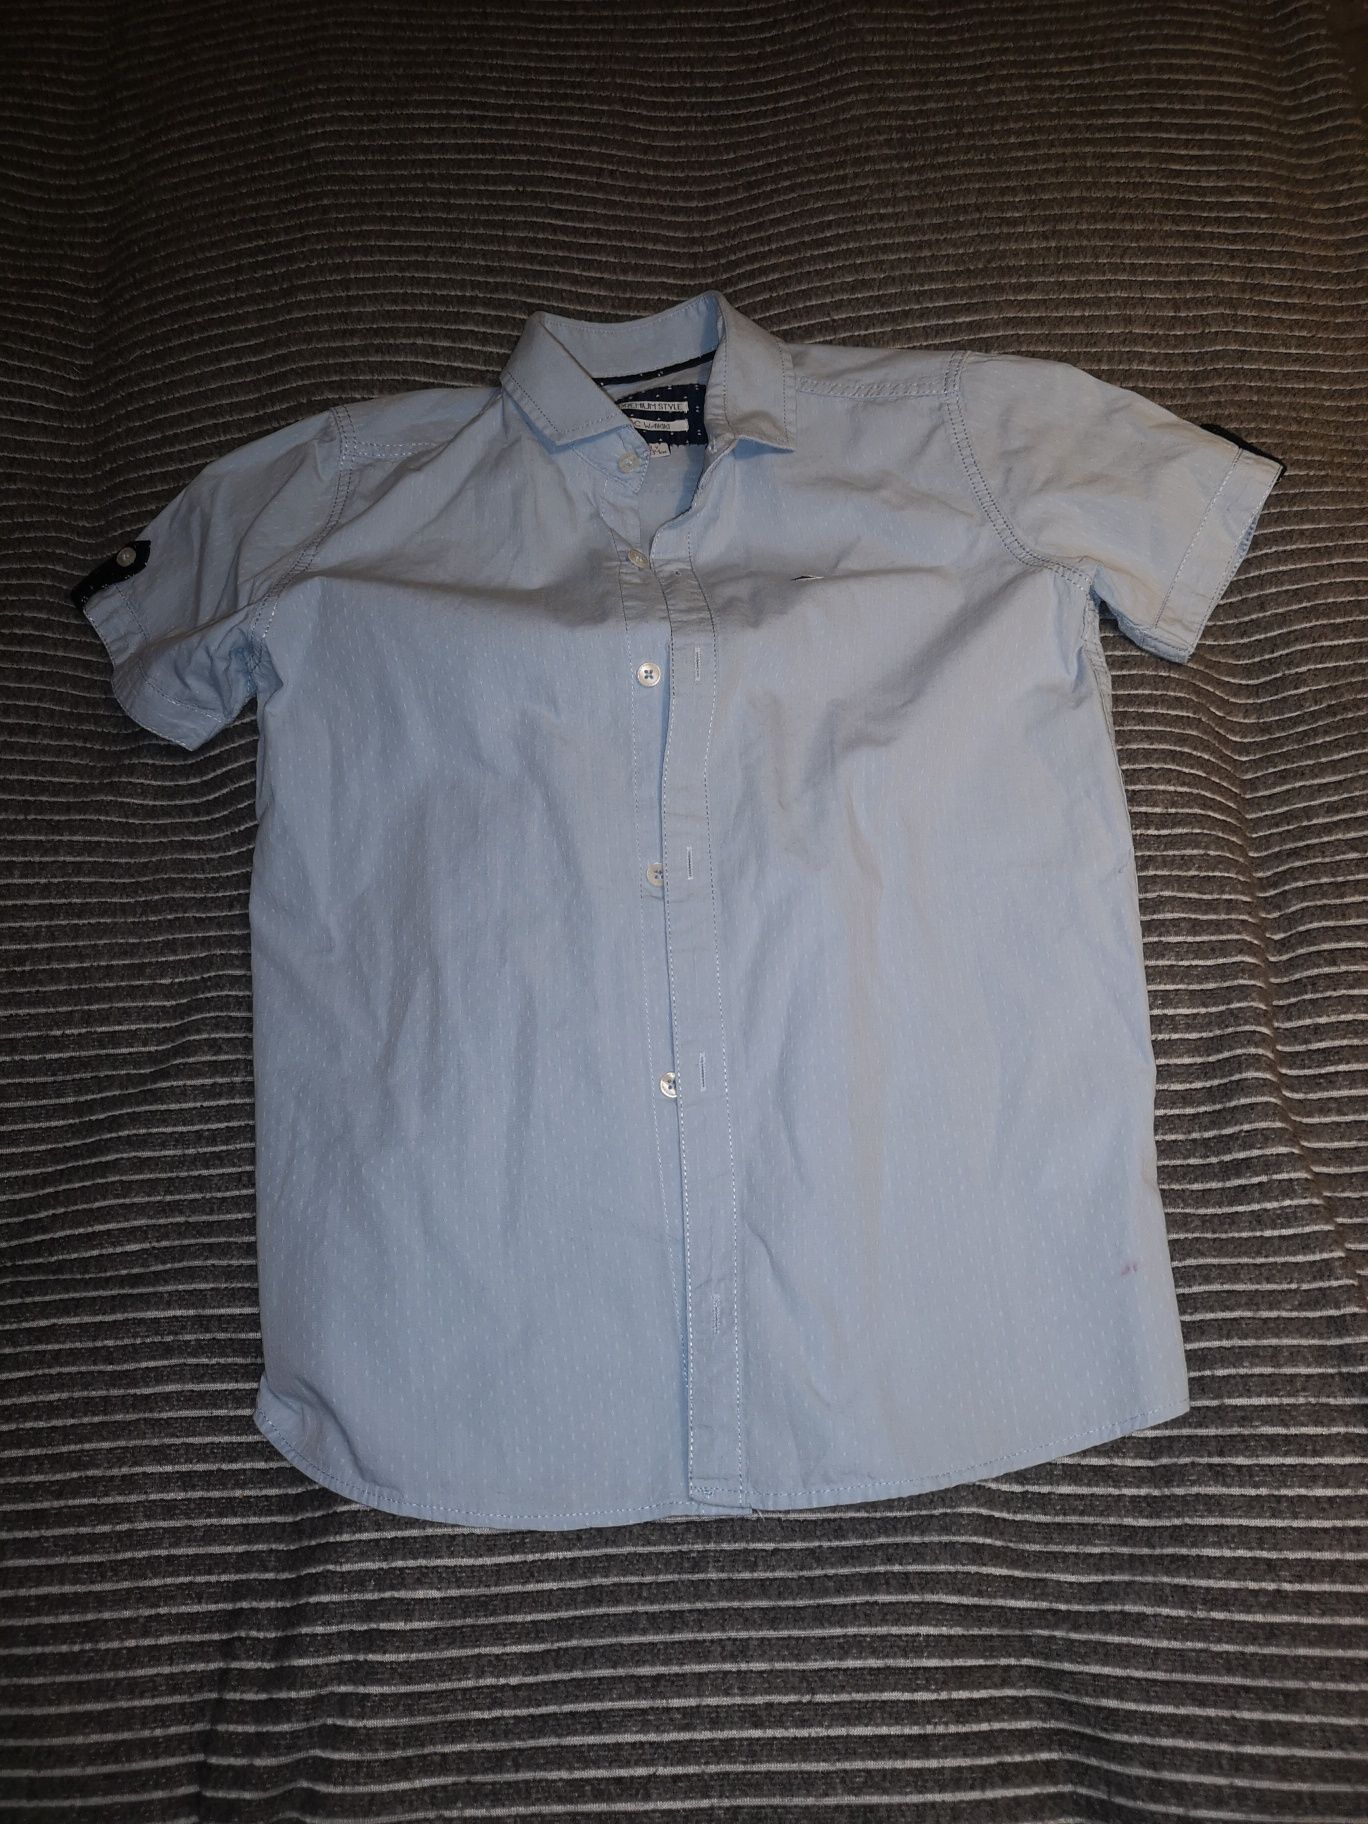 Koszula niebieska dżinsowa dla chłopca 134 cm